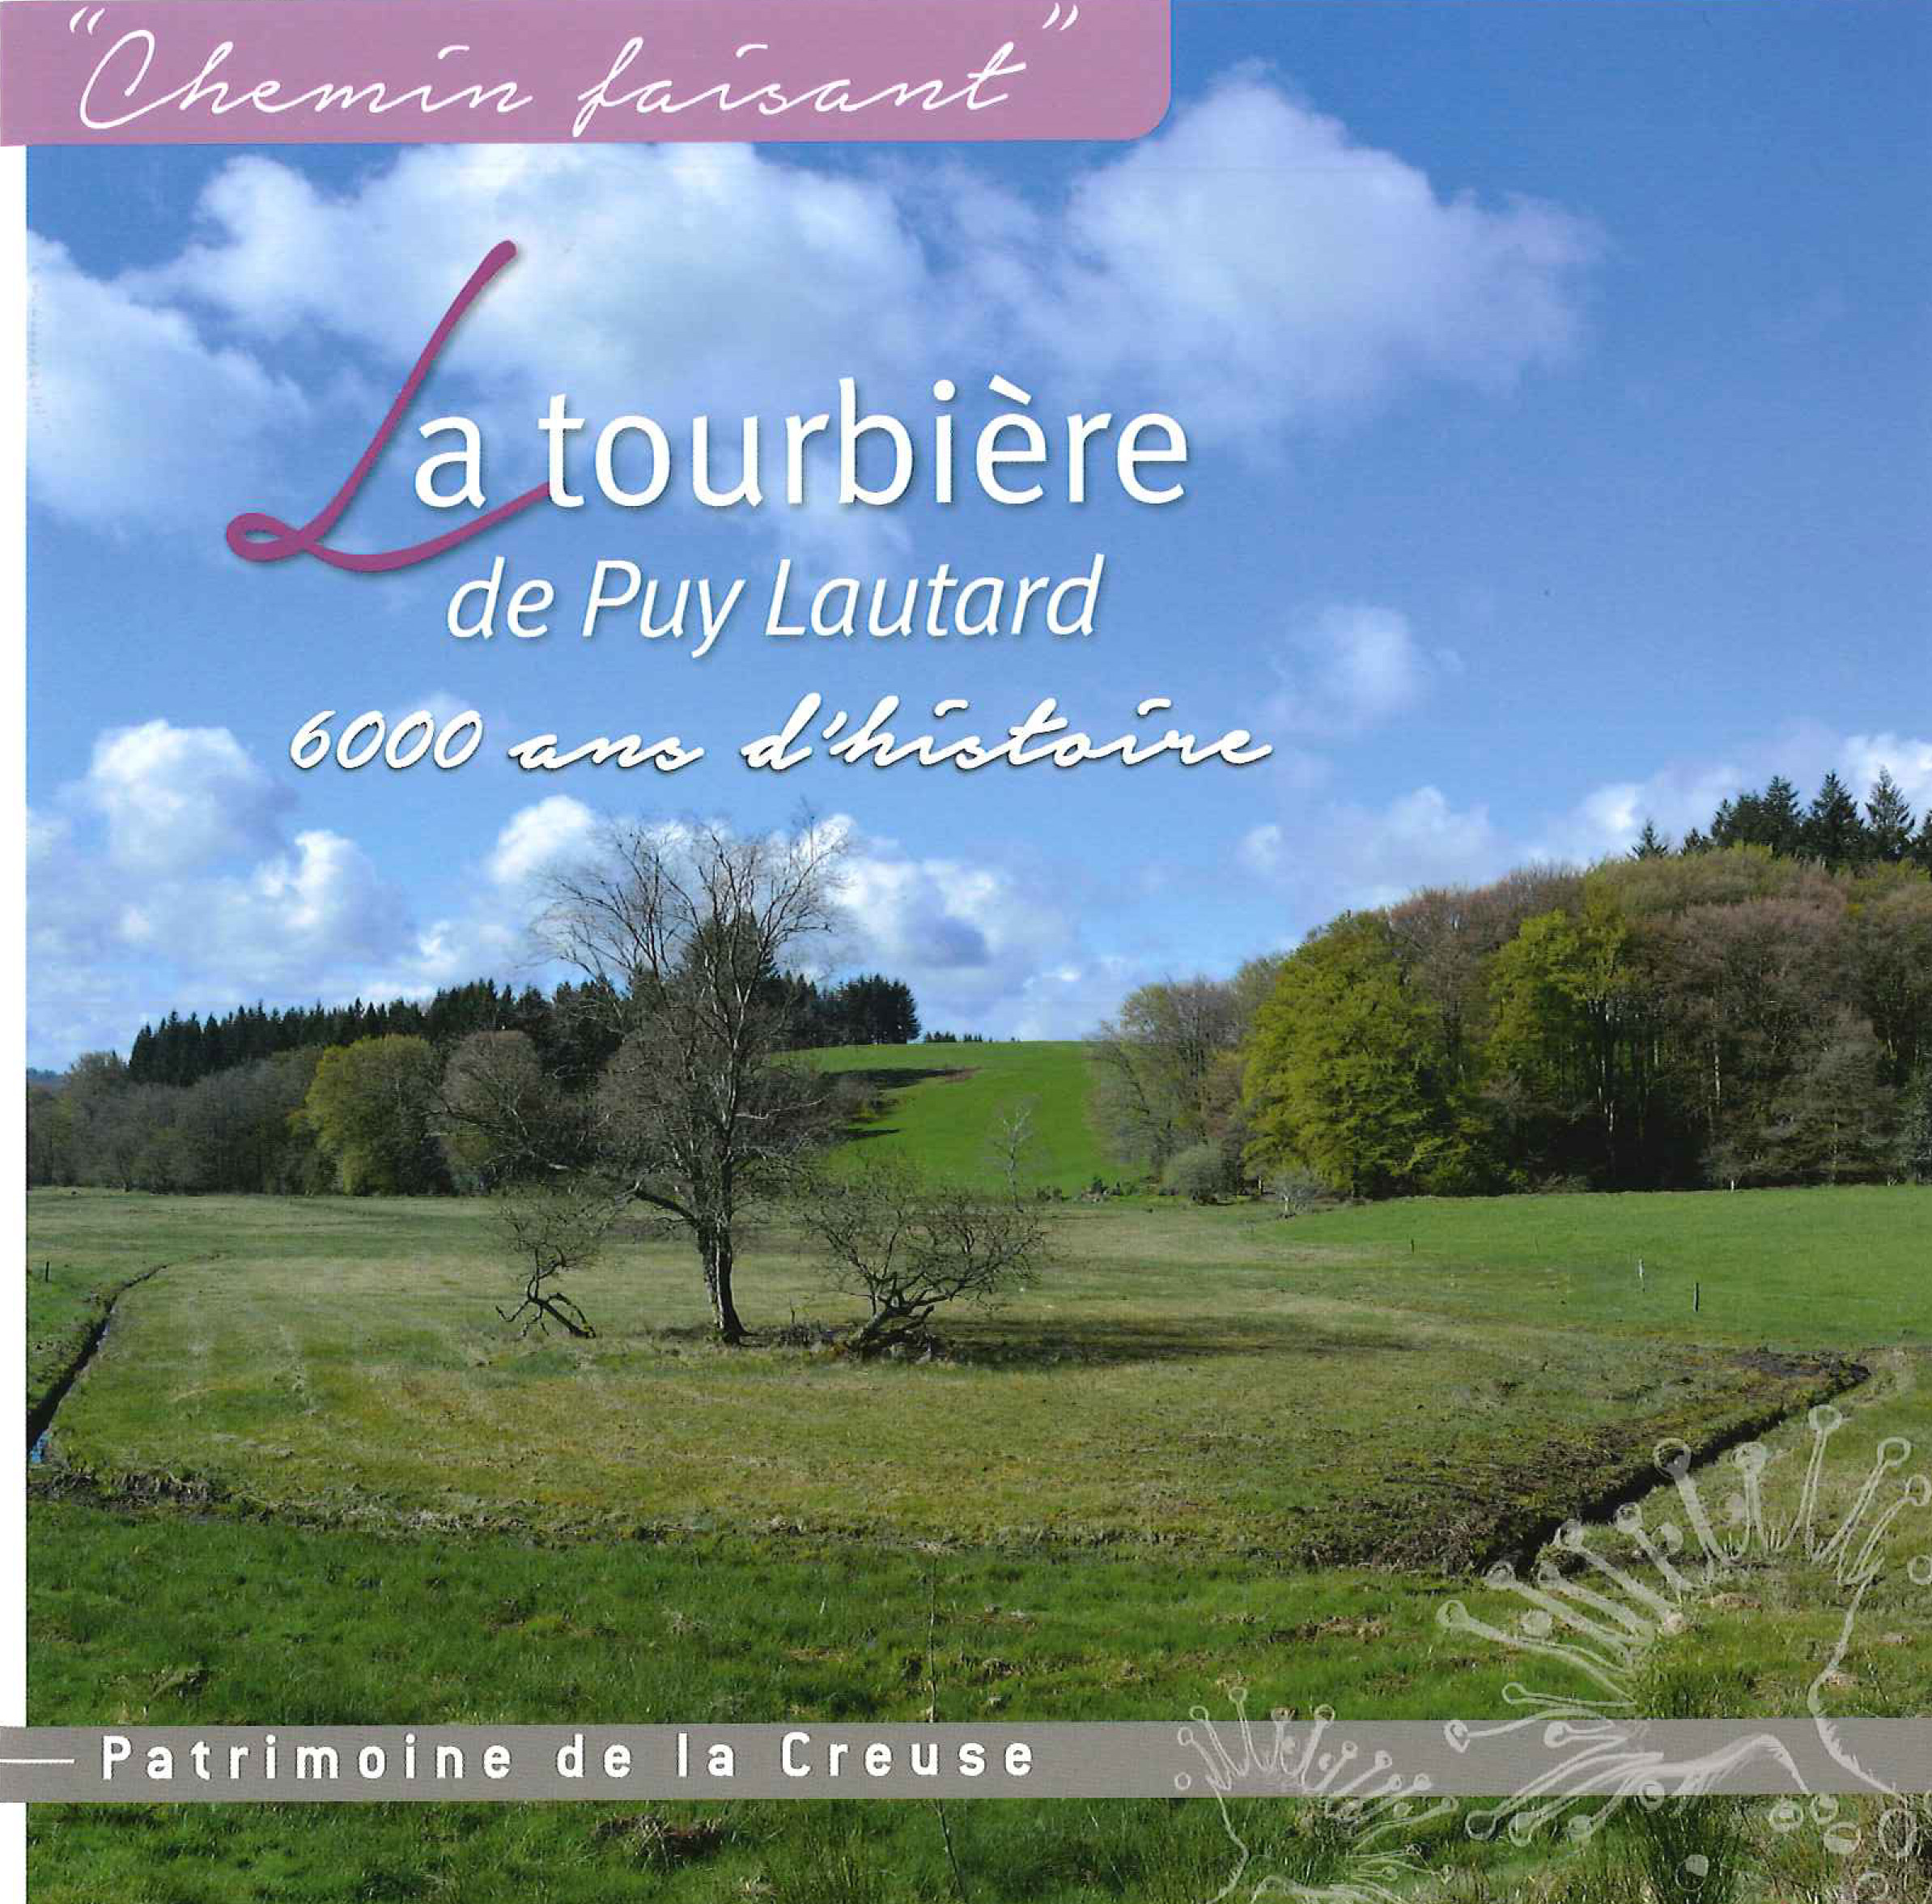 La tourbière de Puy-Lautard : 6000 ans d’histoire